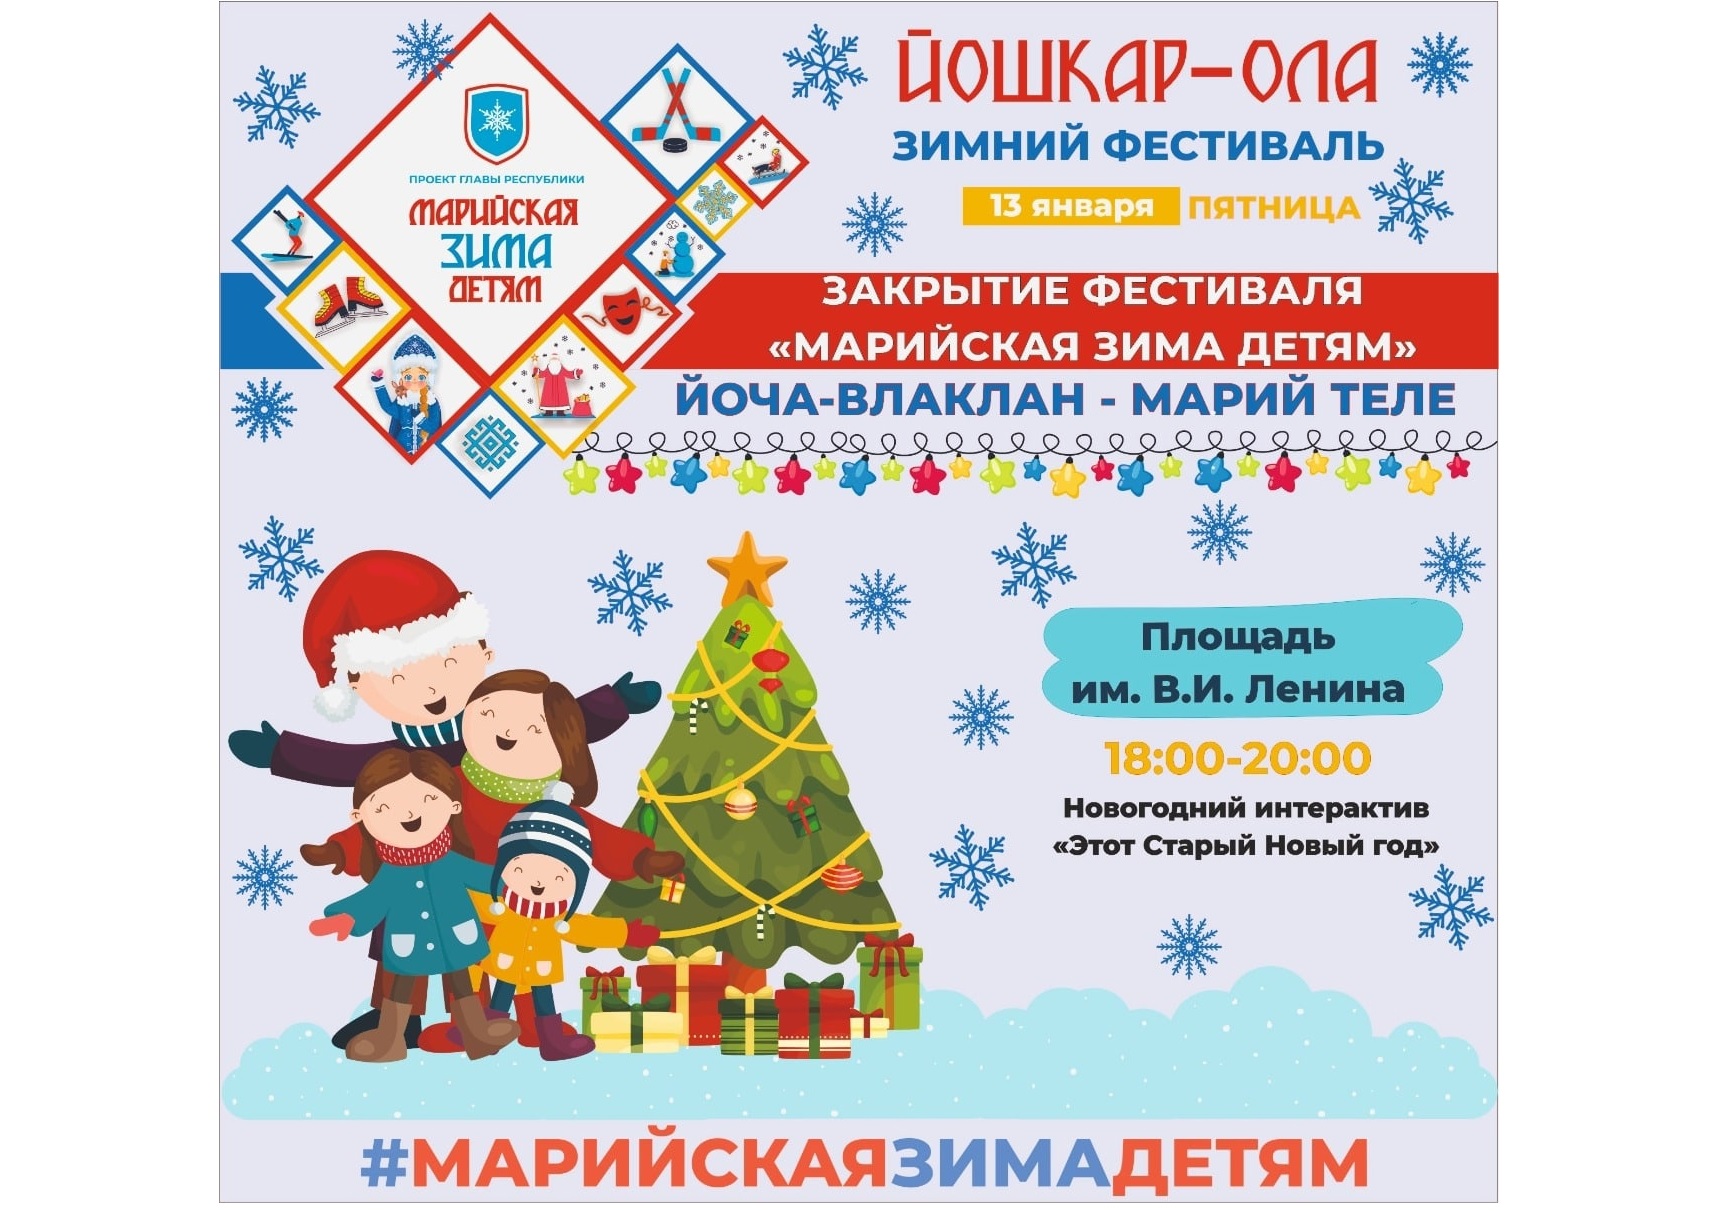 В Йошкар-Оле 13 января пройдет закрытие фестиваля «Марийская зима детям»